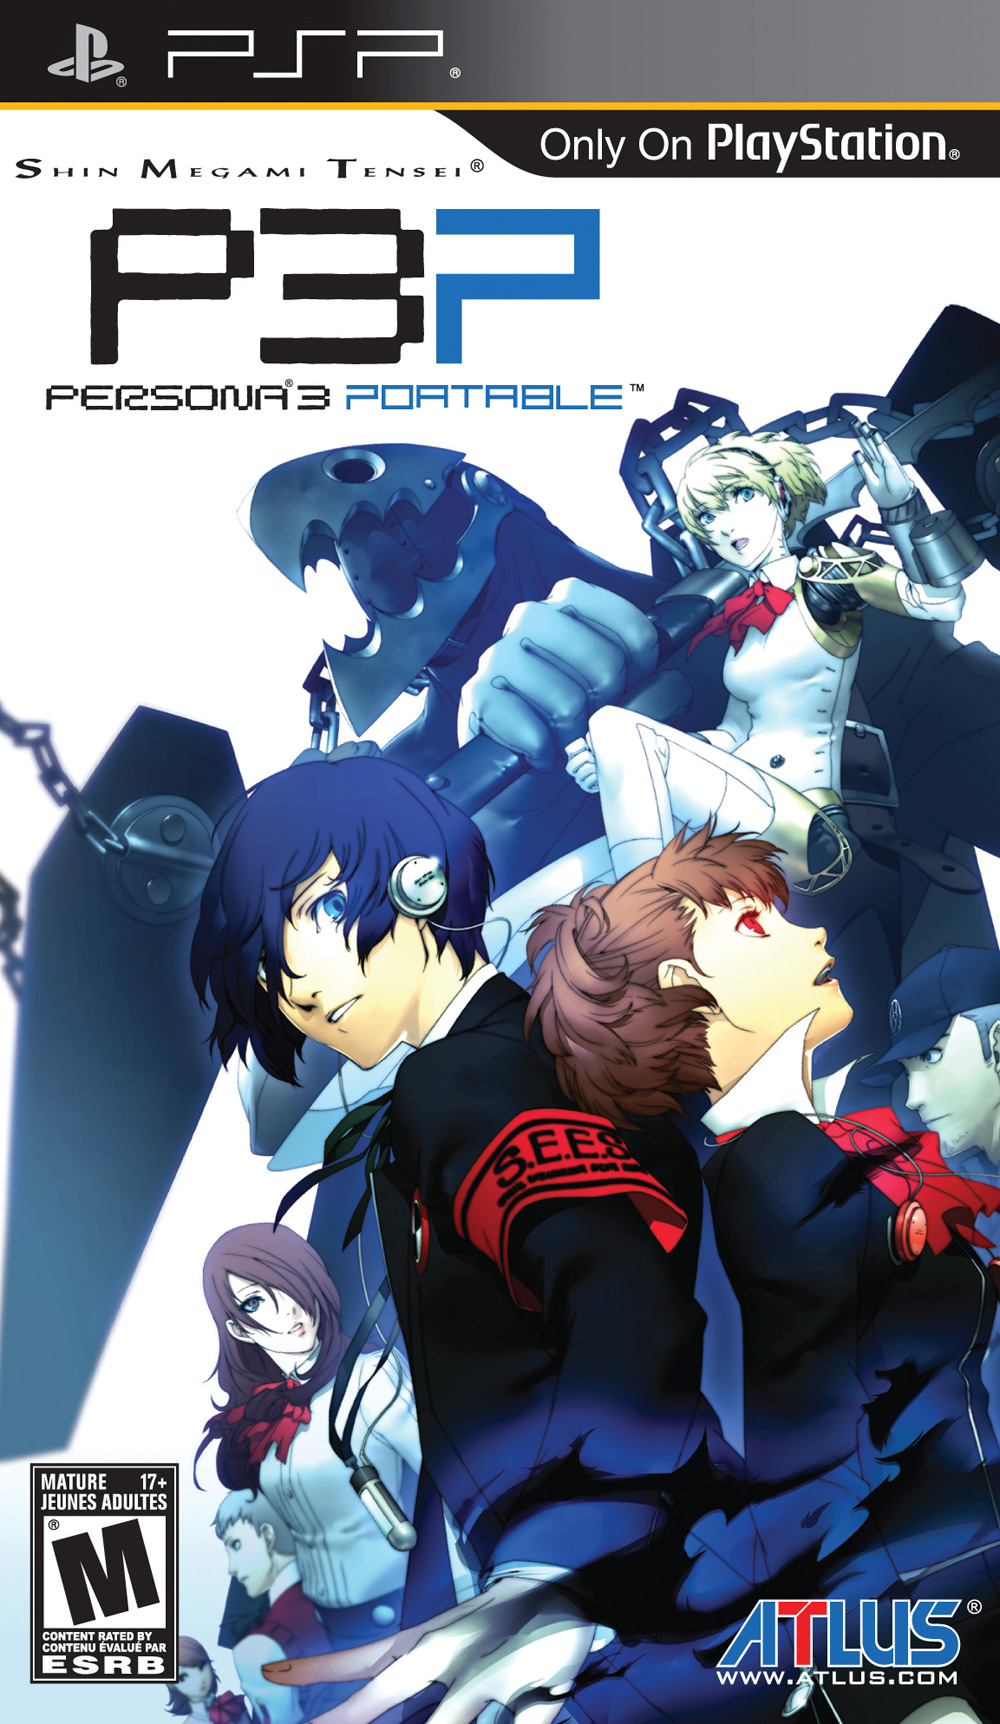 Shin Megami Tensei: Persona 3 Portable Pics, Video Game Collection